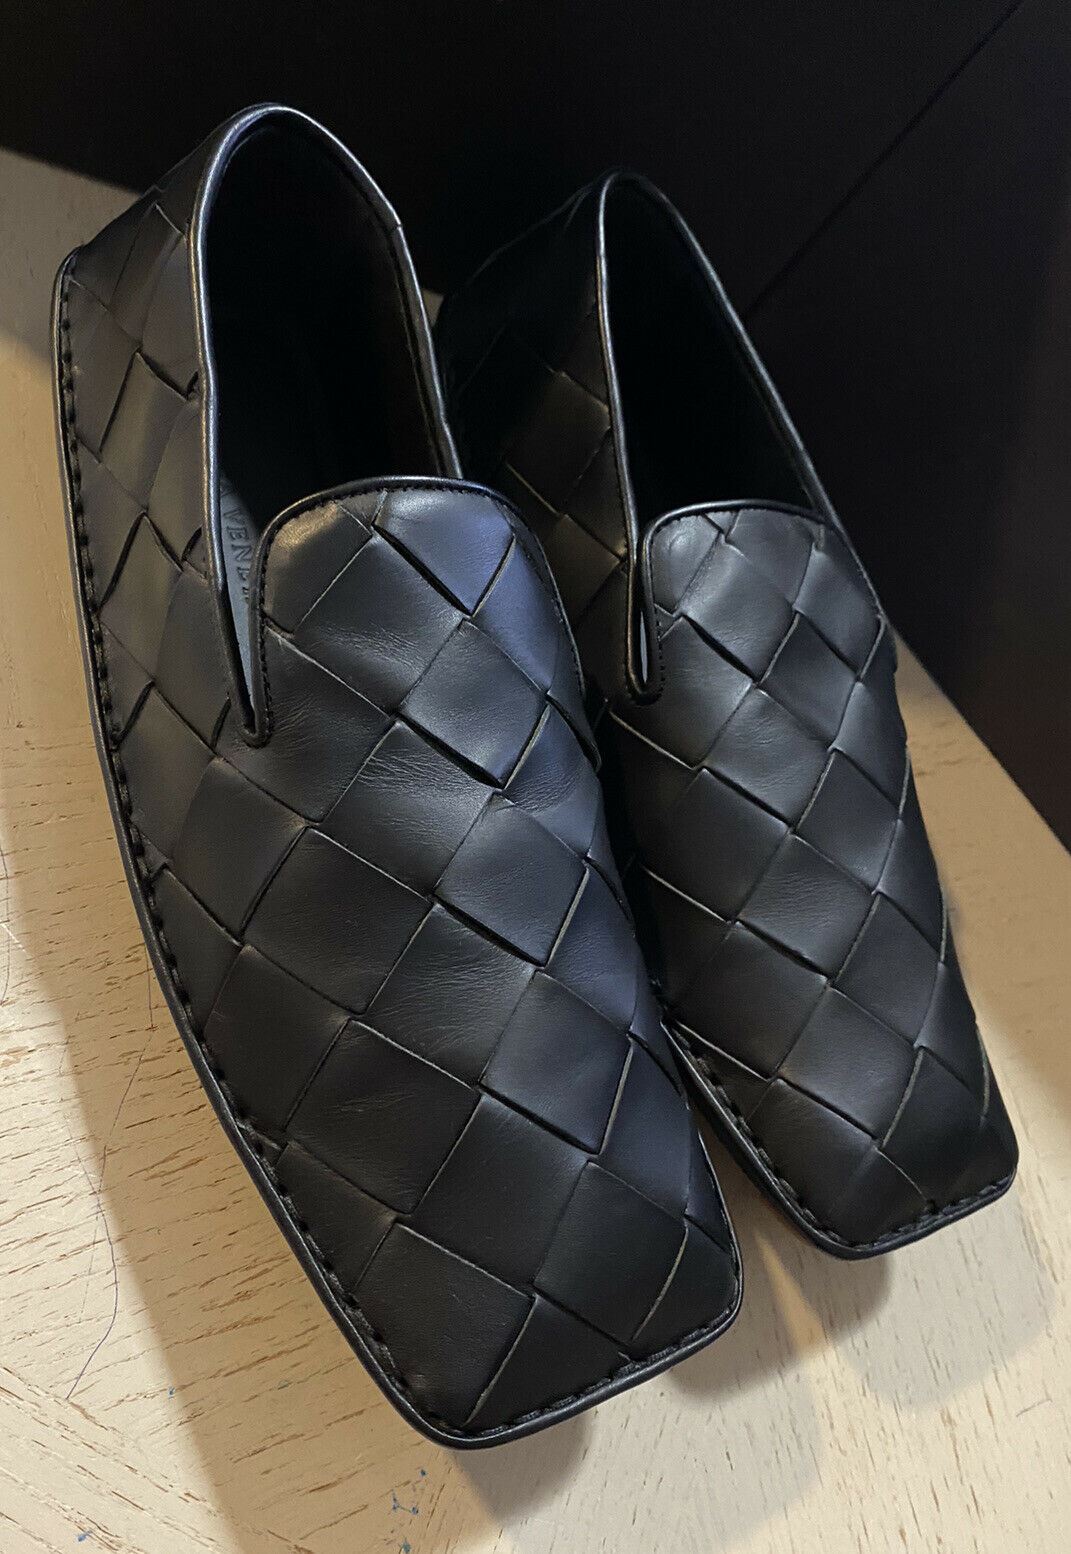 NIB $740 Bottega Veneta Men Leather Moccasin Driver Shoes Black 7.5 US/40.5 Eu